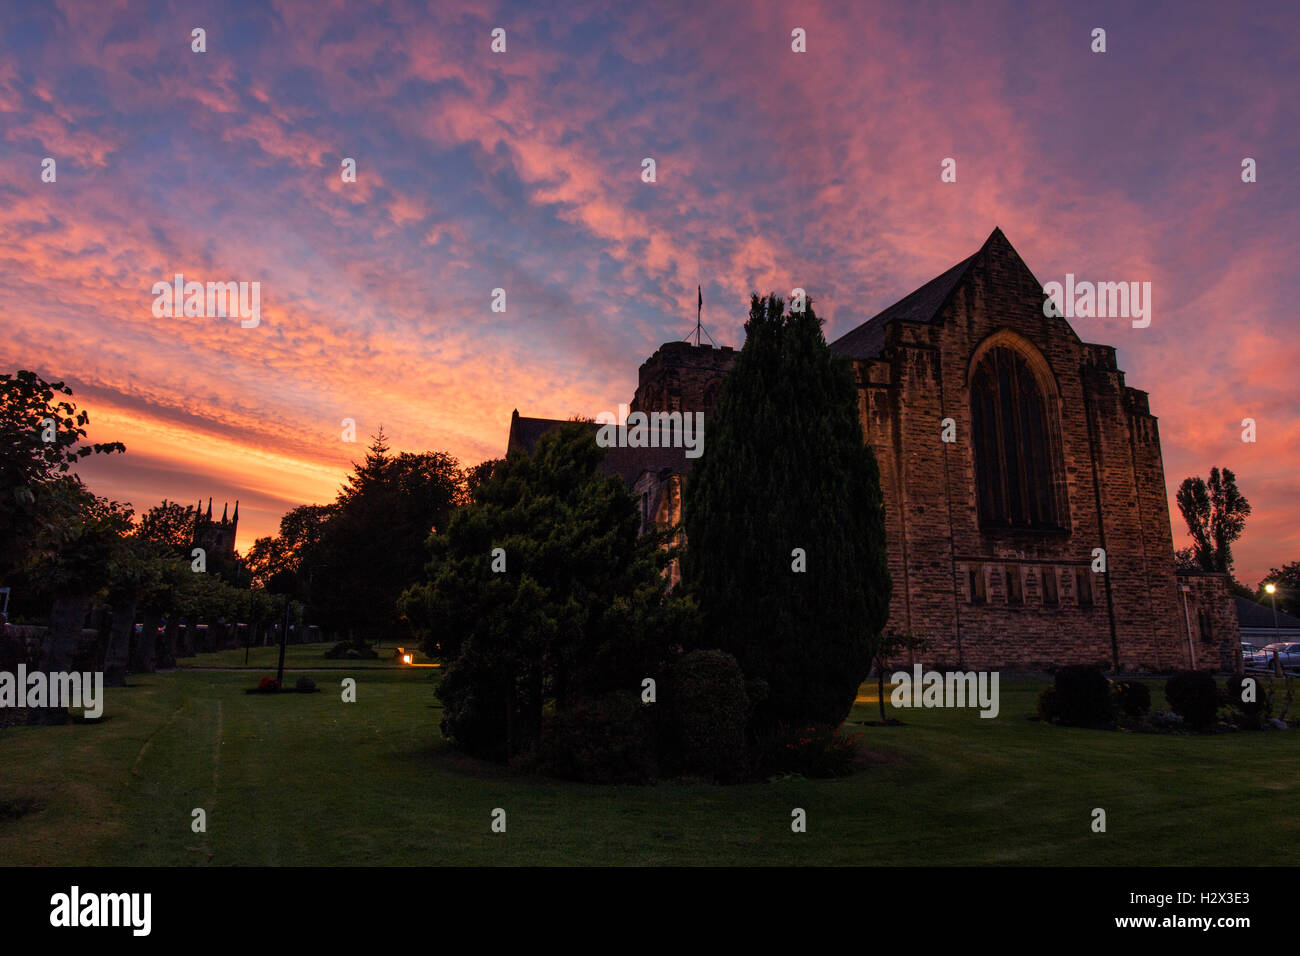 Magnifique coucher de soleil sur serein une église, avec le rose et orange nuages dans un ciel bleu parfait, entouré d'arbres et d'herbe. Banque D'Images